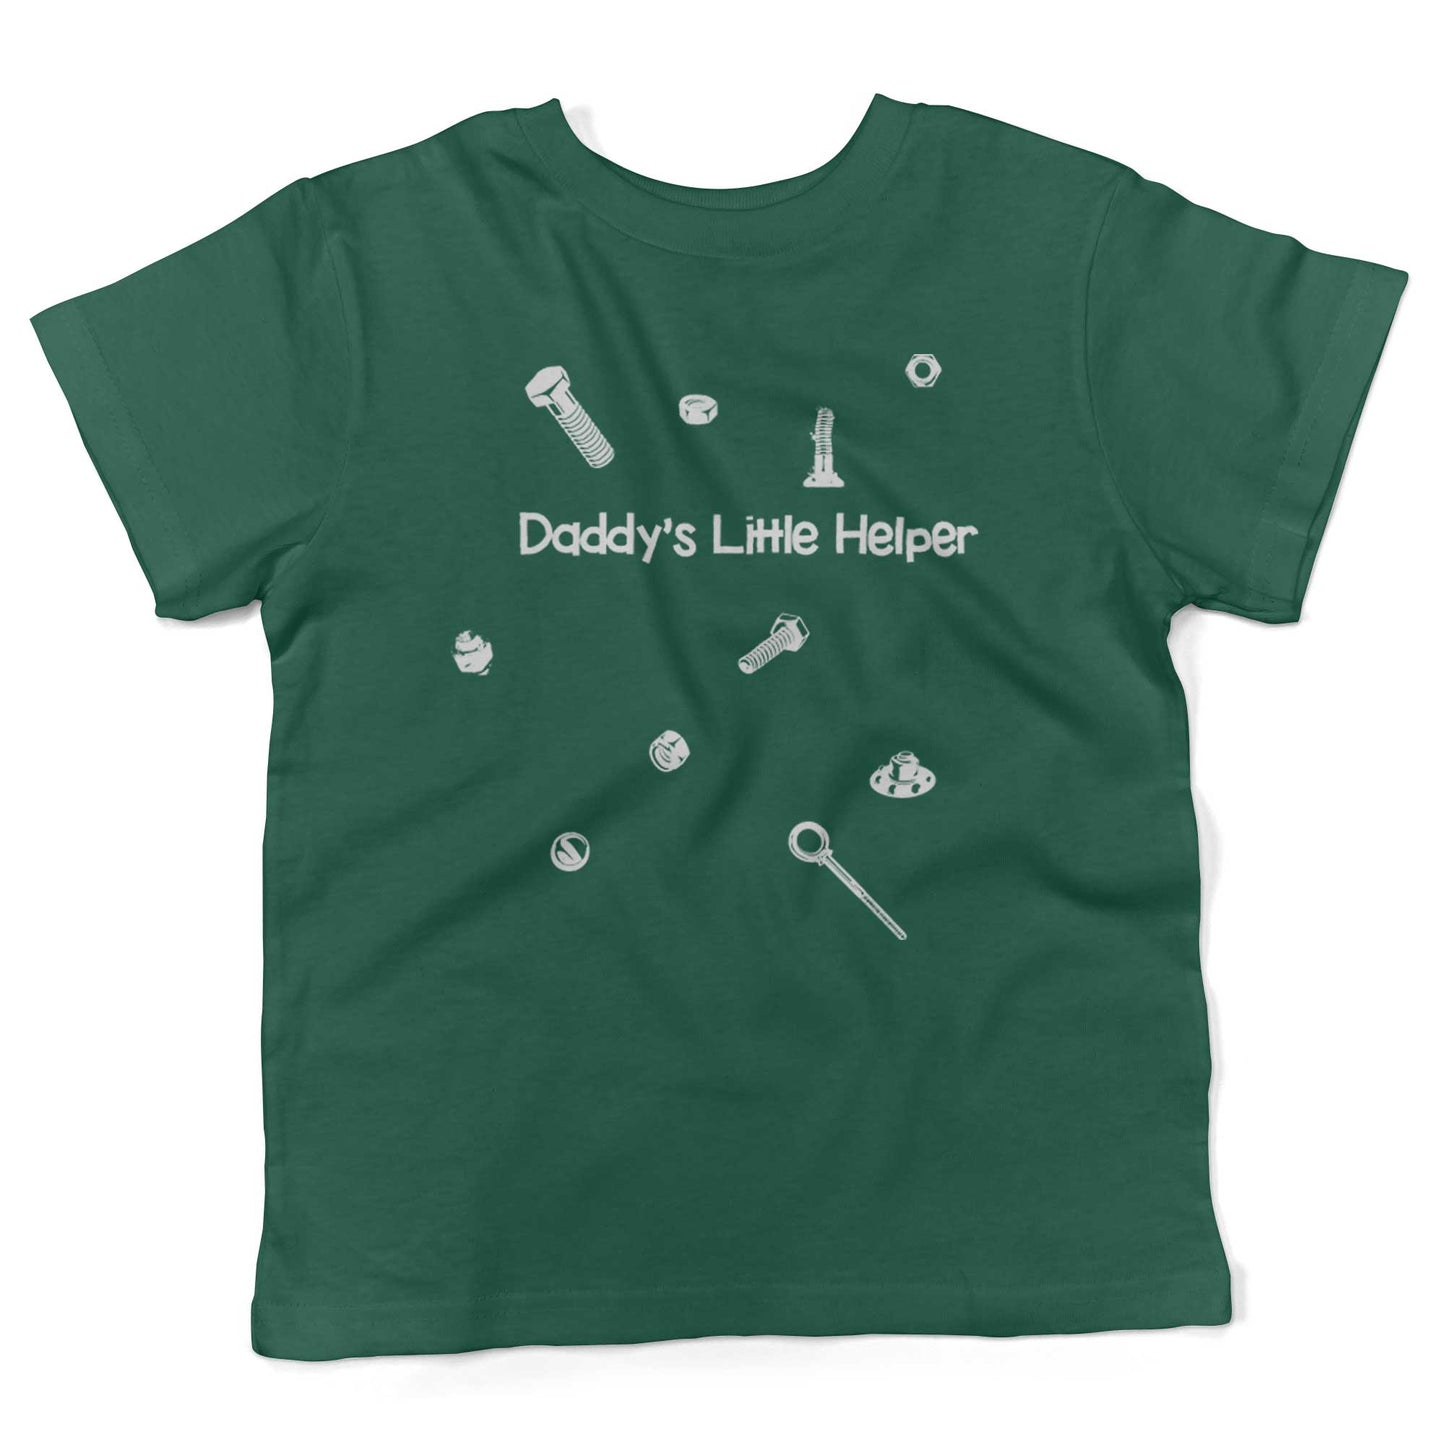 Daddy's Little Helper Toddler Shirt-Kelly Green-2T